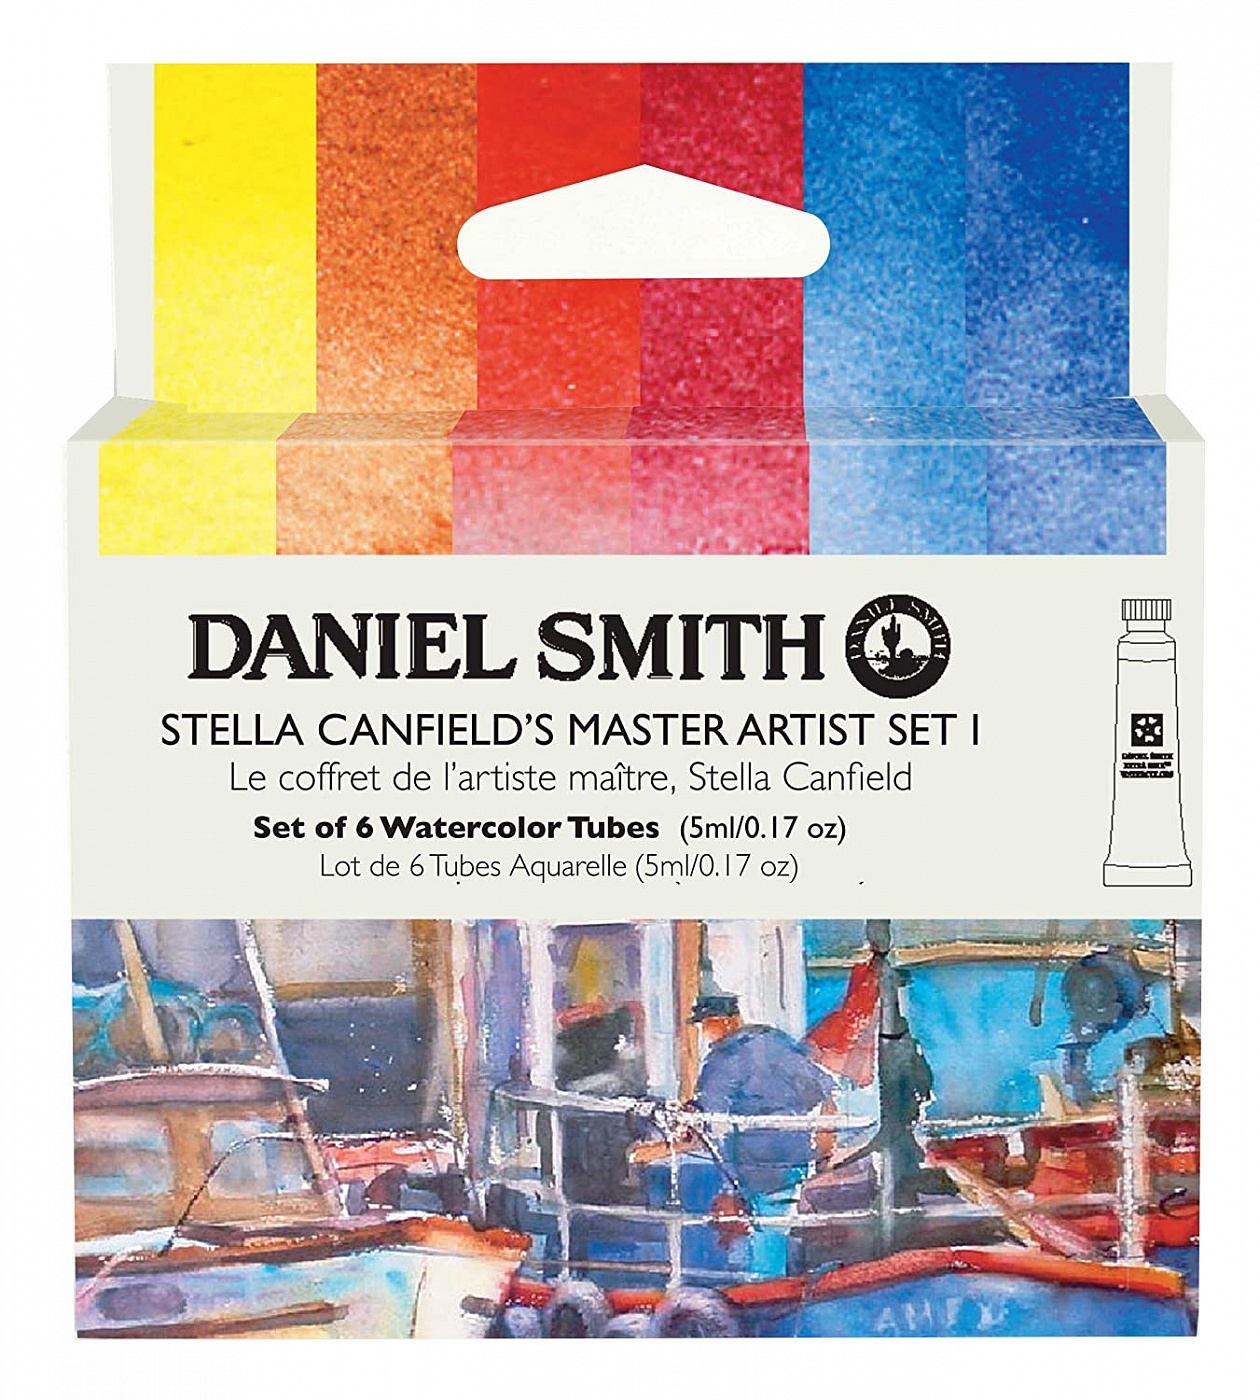 Набор акварели Daniel Smith Stella Canfield's Master Artist Set I, в тубах 6 цв*5 мл альбом галерея искусства стран европы и америки на русском языке